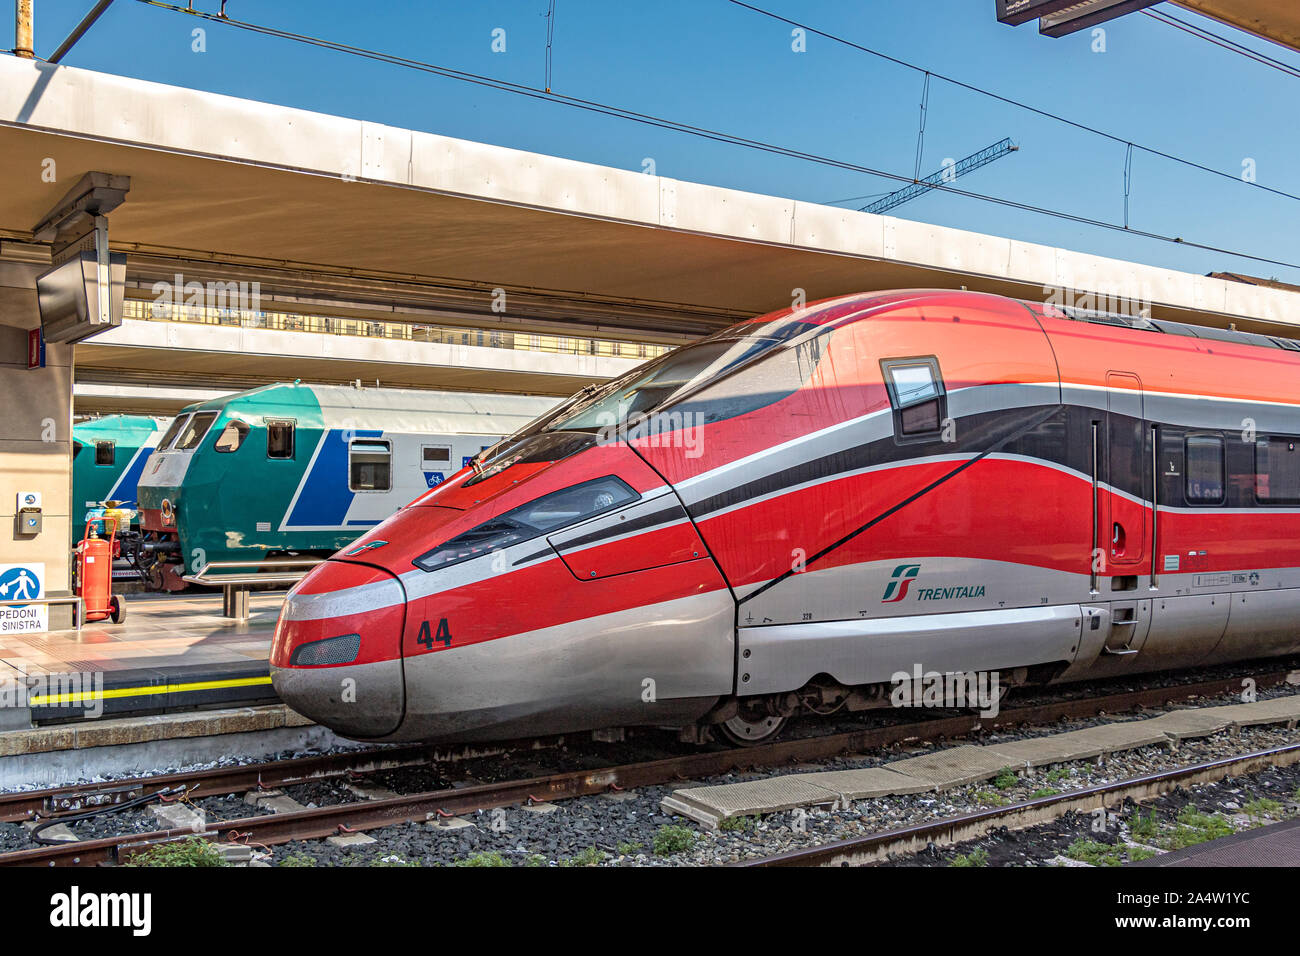 A Trenitalia Frecciarossa 1000 High Speed train at Porta Nuova railway station,Turin.Italy Stock Photo